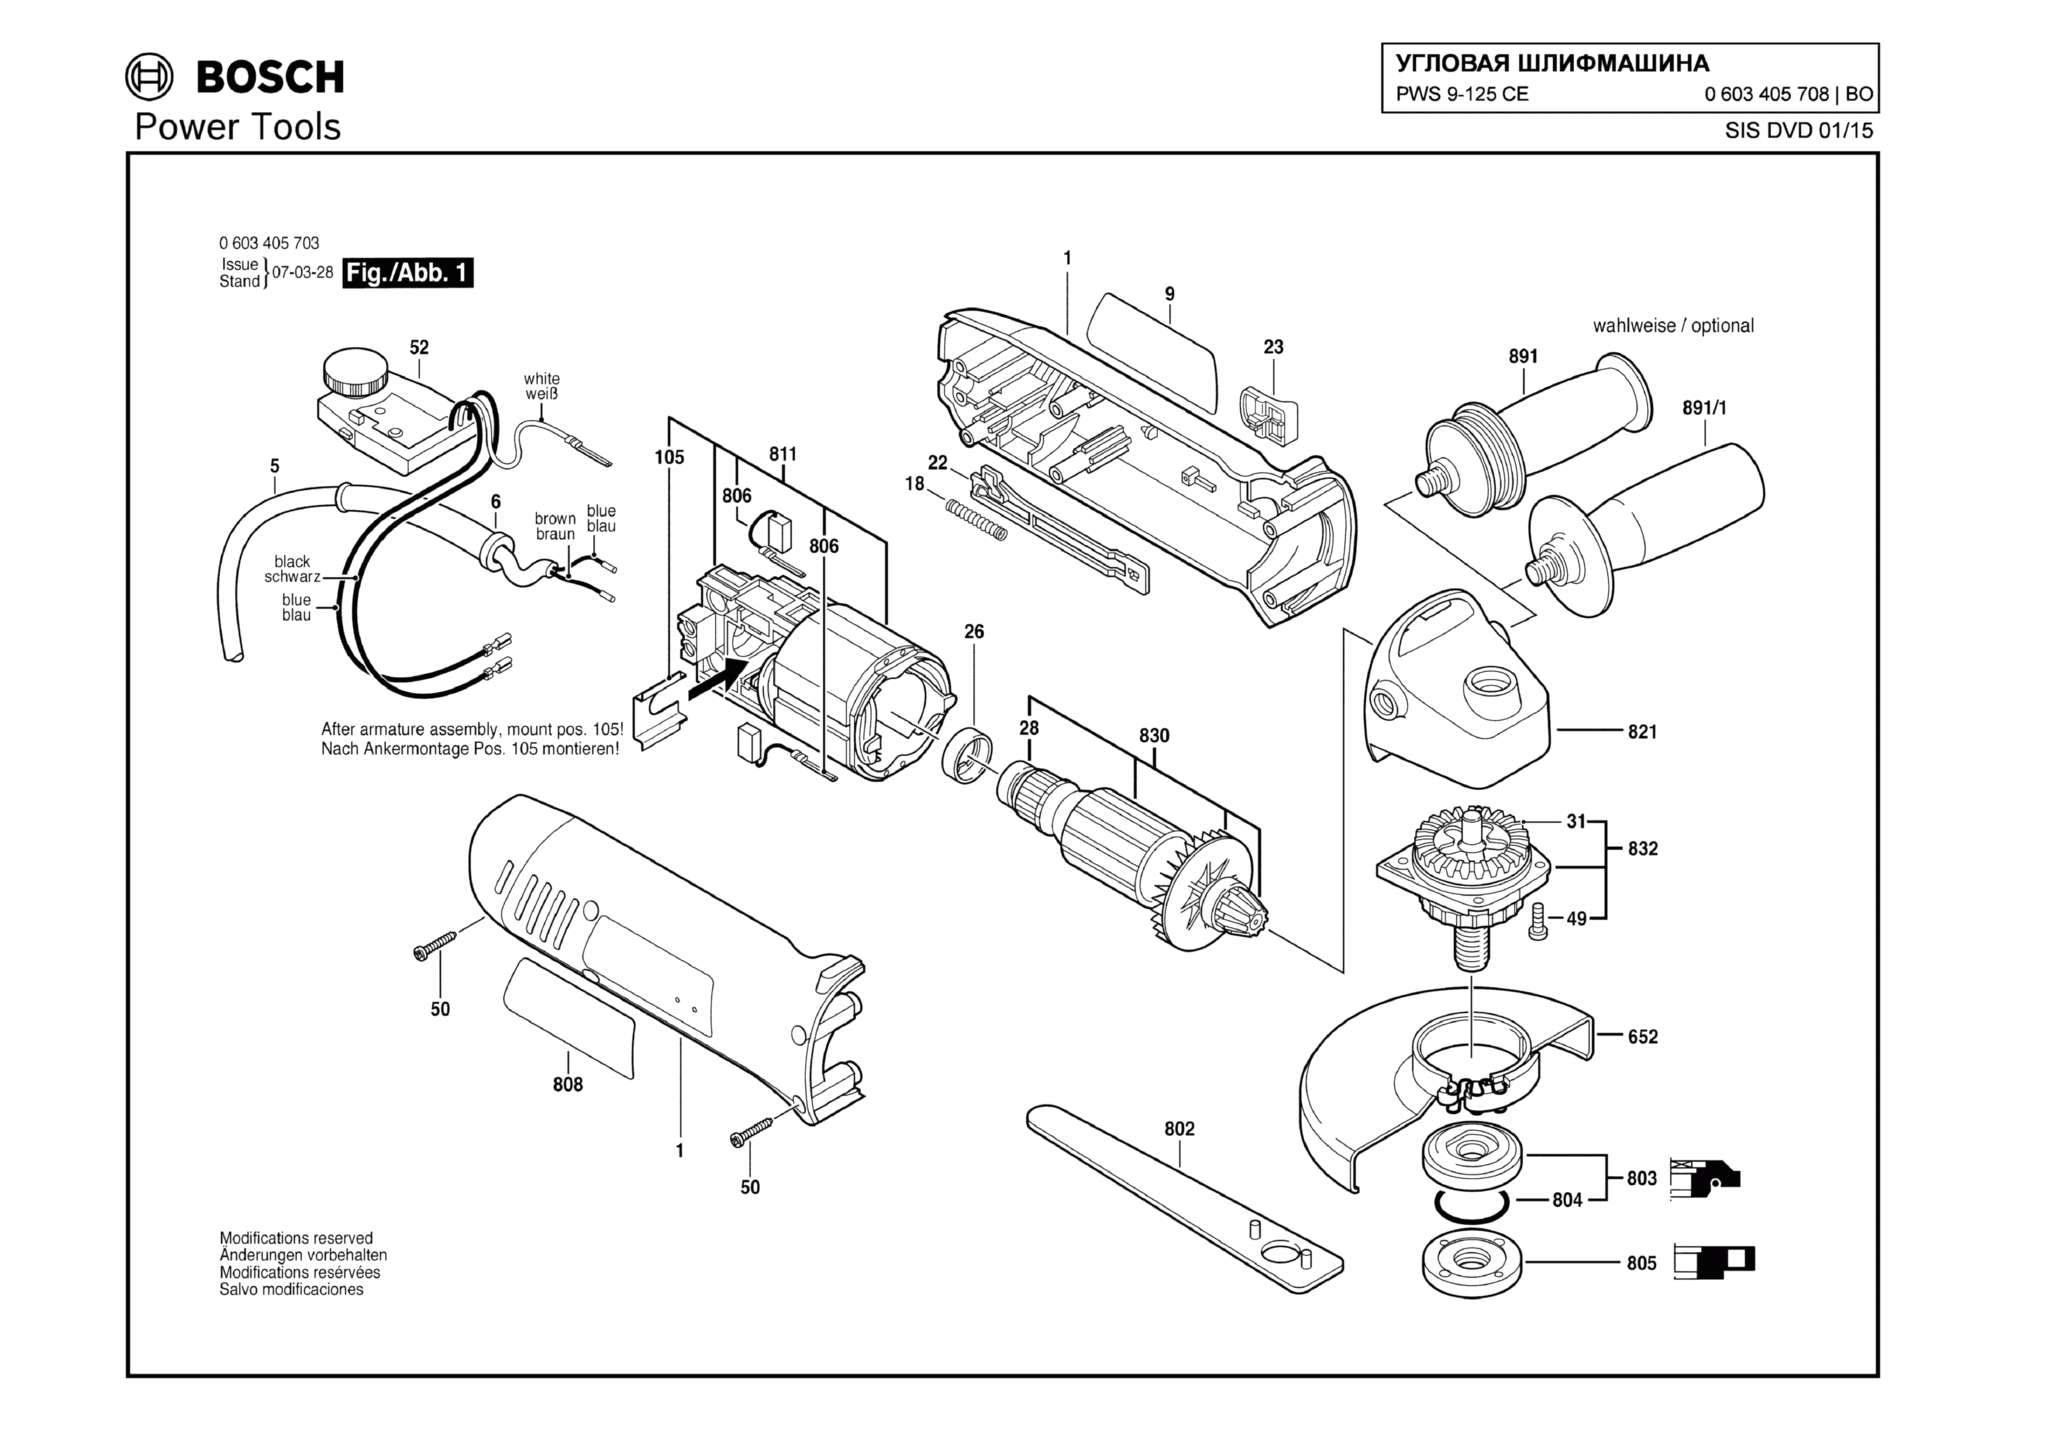 Запчасти, схема и деталировка Bosch PWS 9-125 CE (ТИП 0603405708)